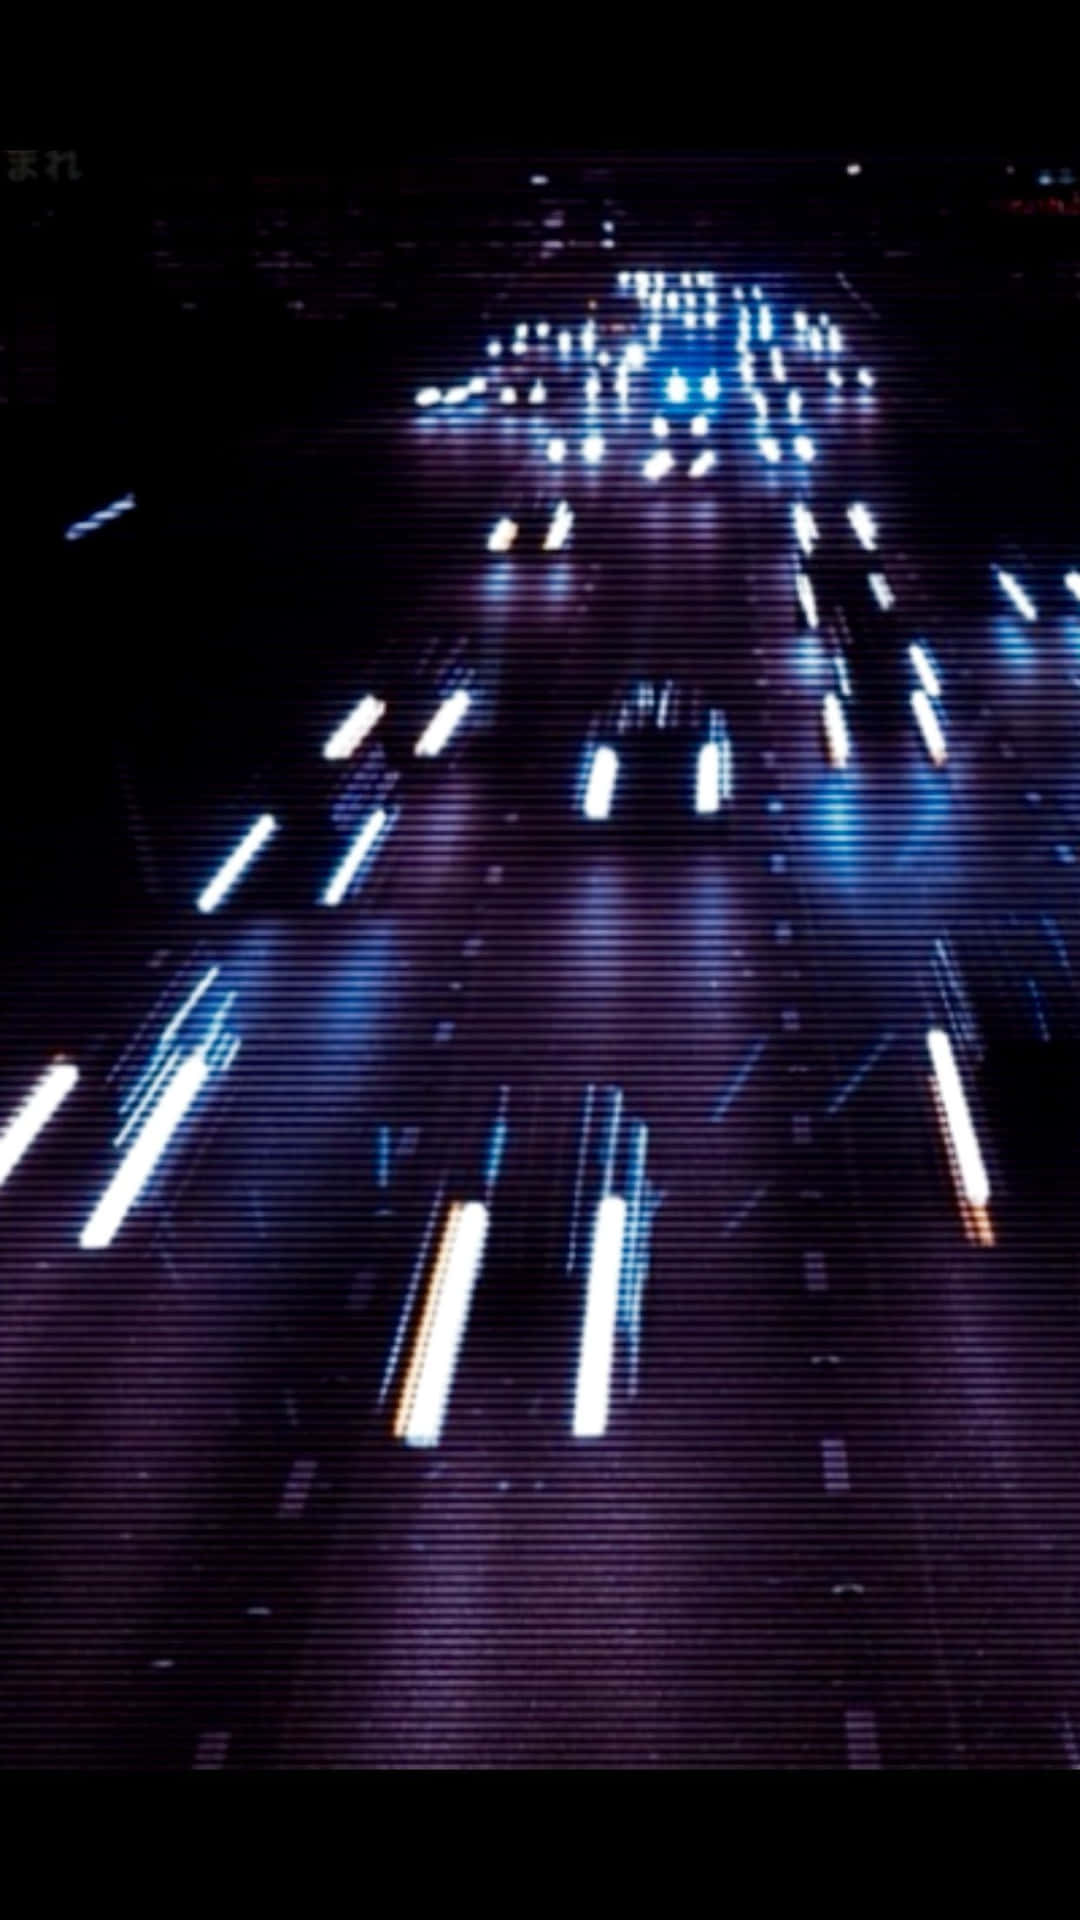 Unalarga Exposición De Coches En Una Autopista De Noche Fondo de pantalla